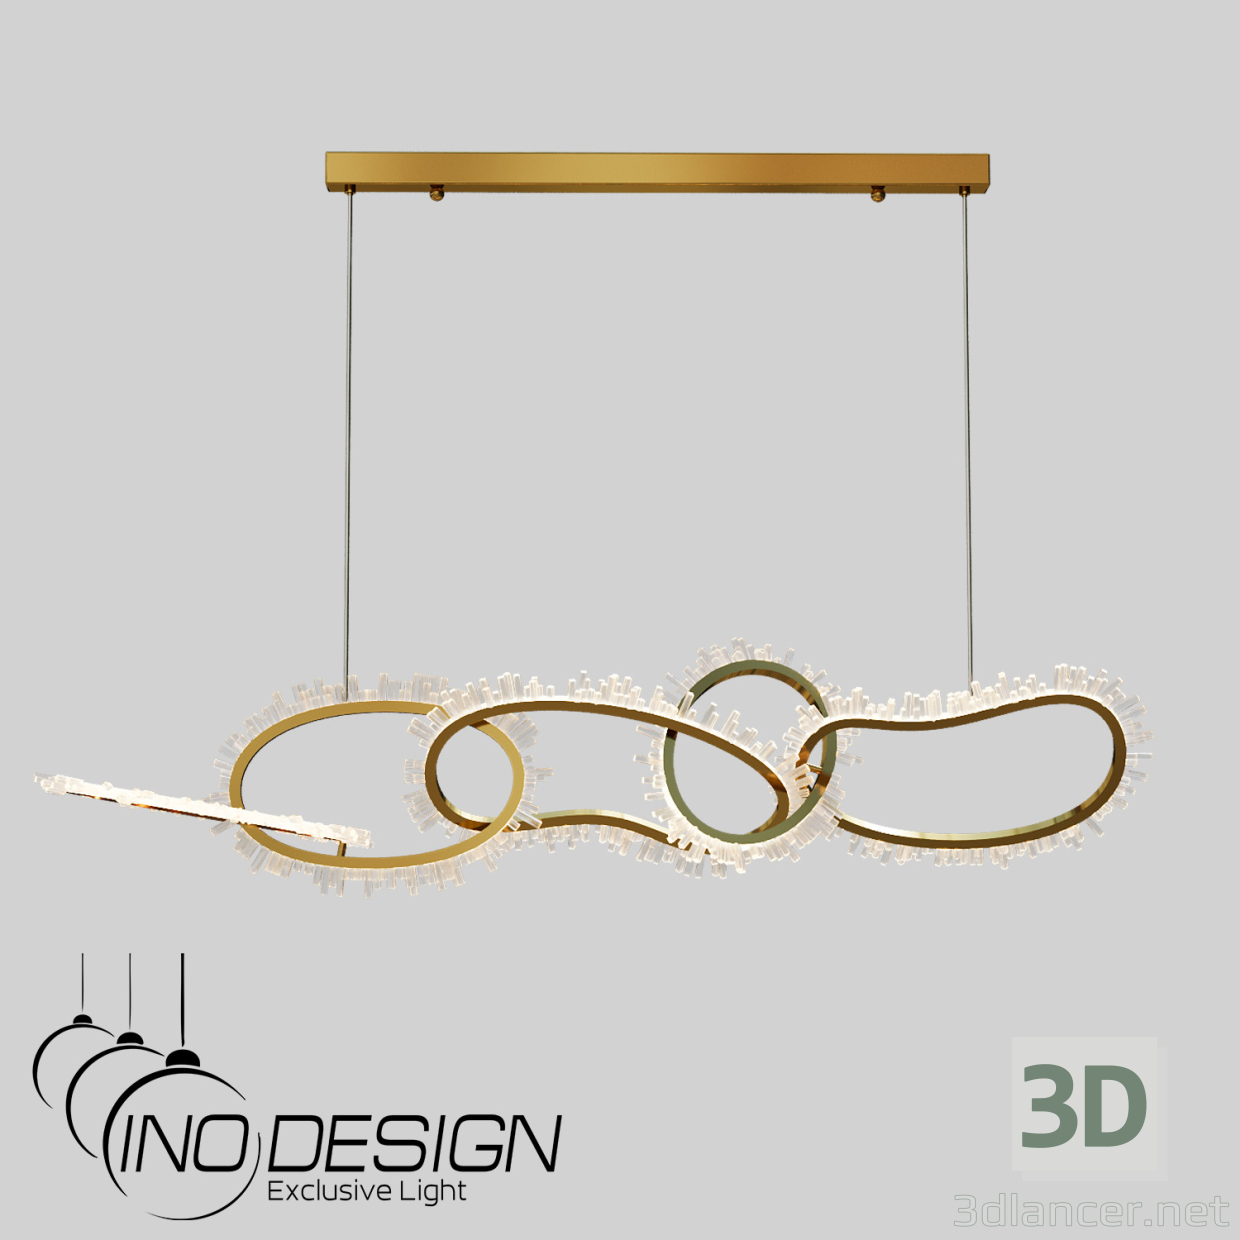 3D Modell LED-Pendelleuchter Inodesign Chain 40.6262-0 - Vorschau